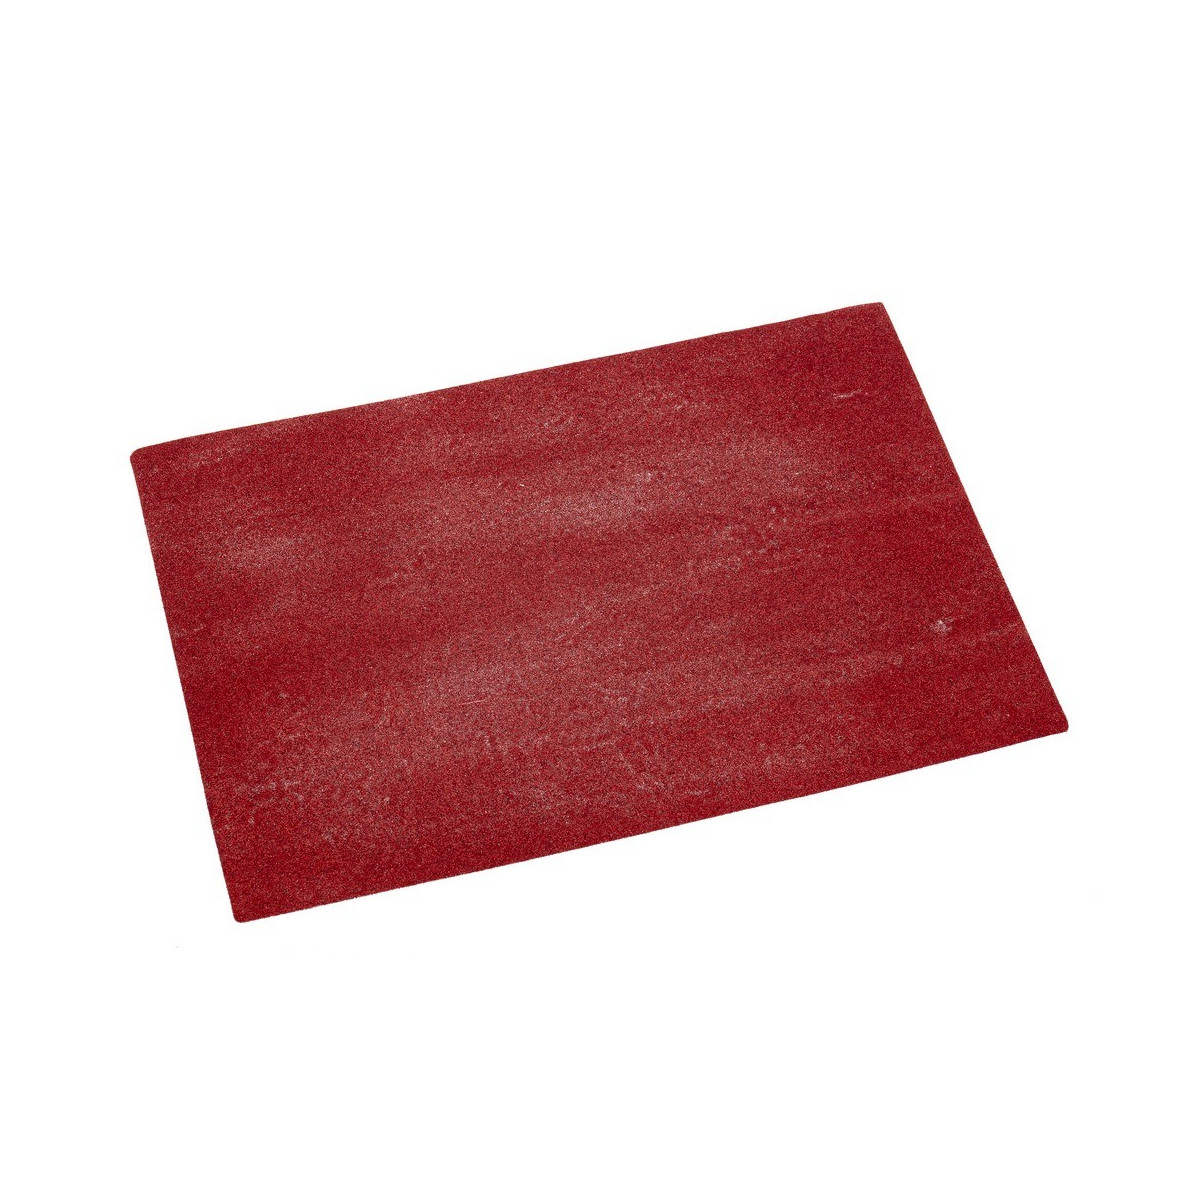 Dessous de plat rouge 40 x 27 50 cm